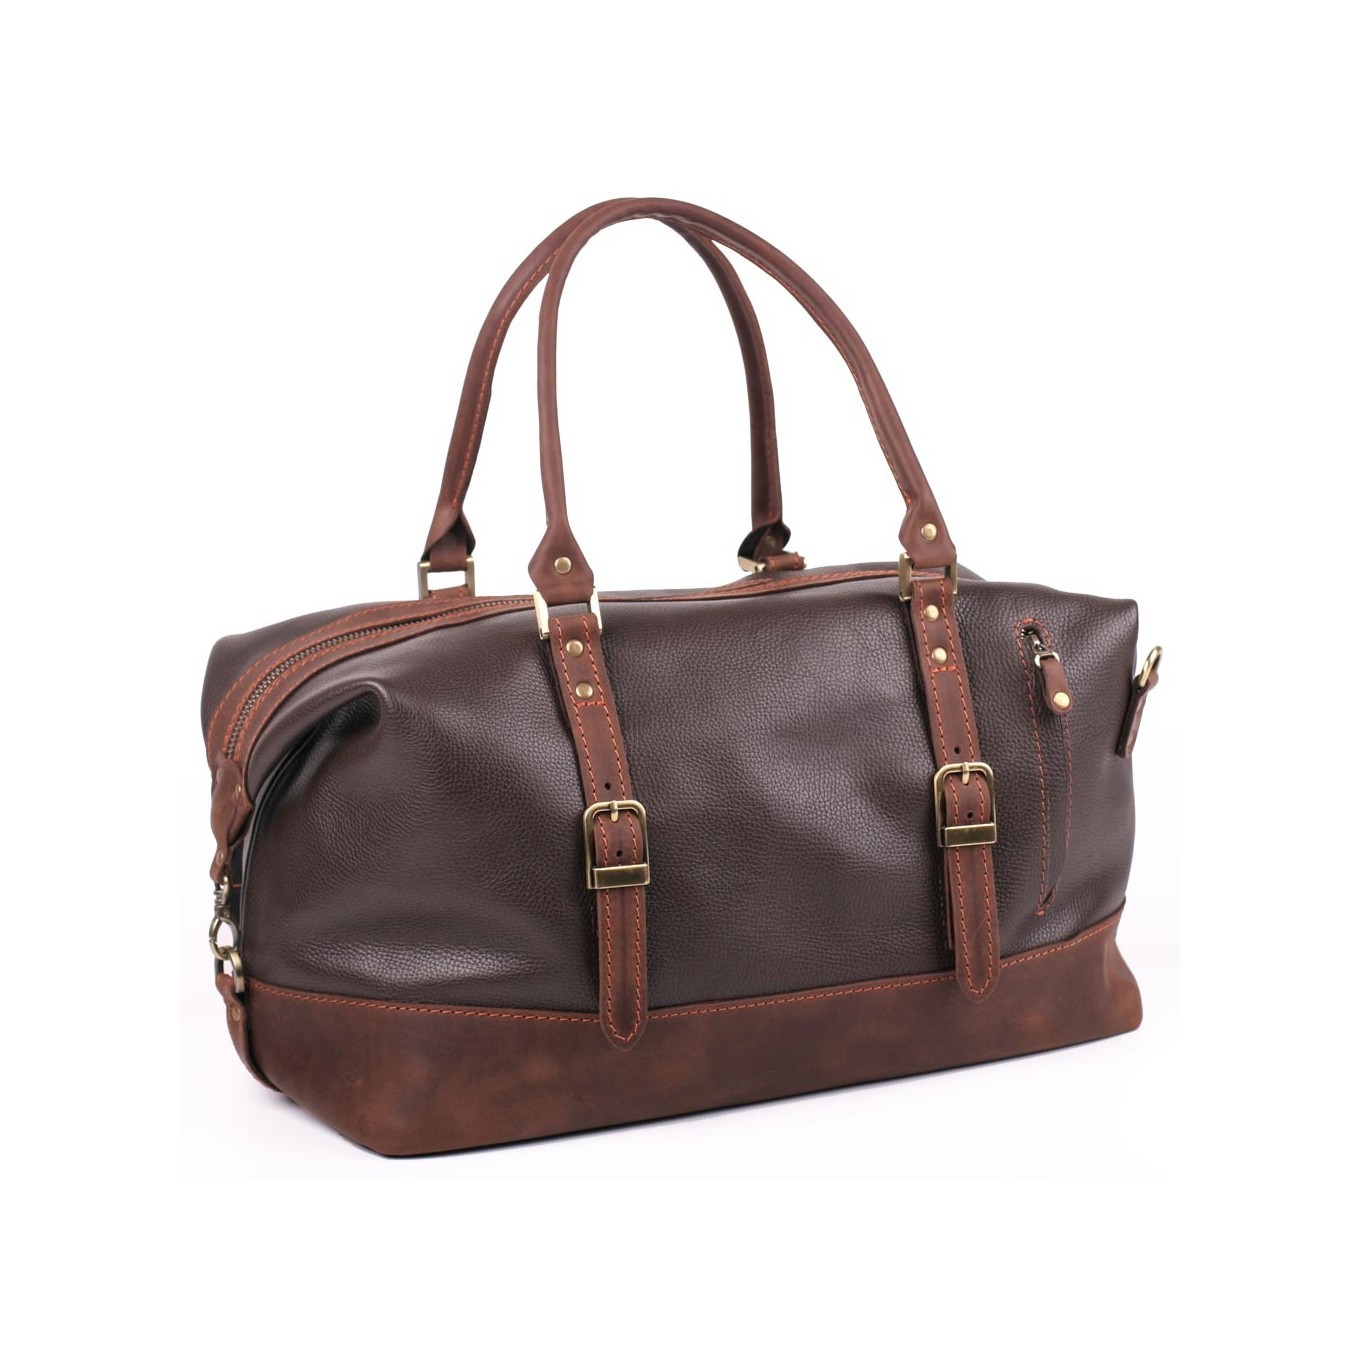 Leather brown weekender bag